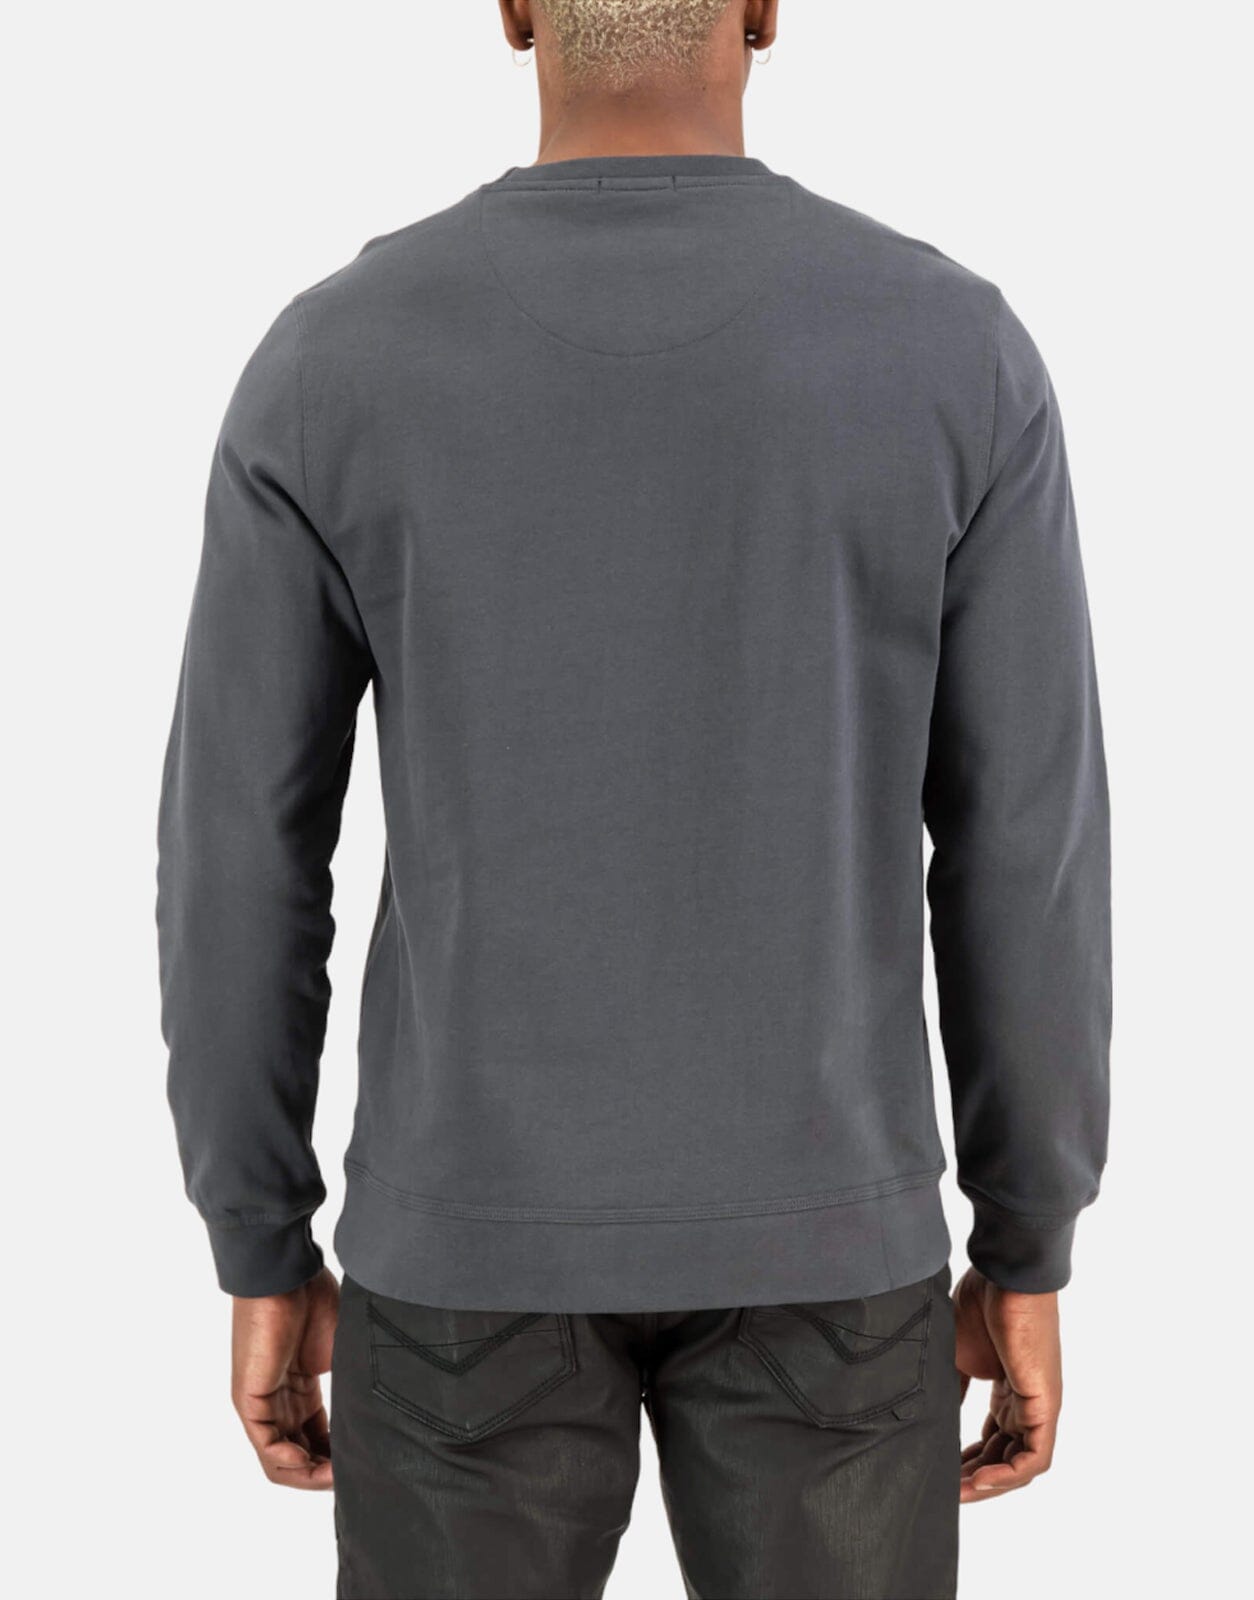 SPCC Allegra Dark Grey Sweatshirt - Subwear